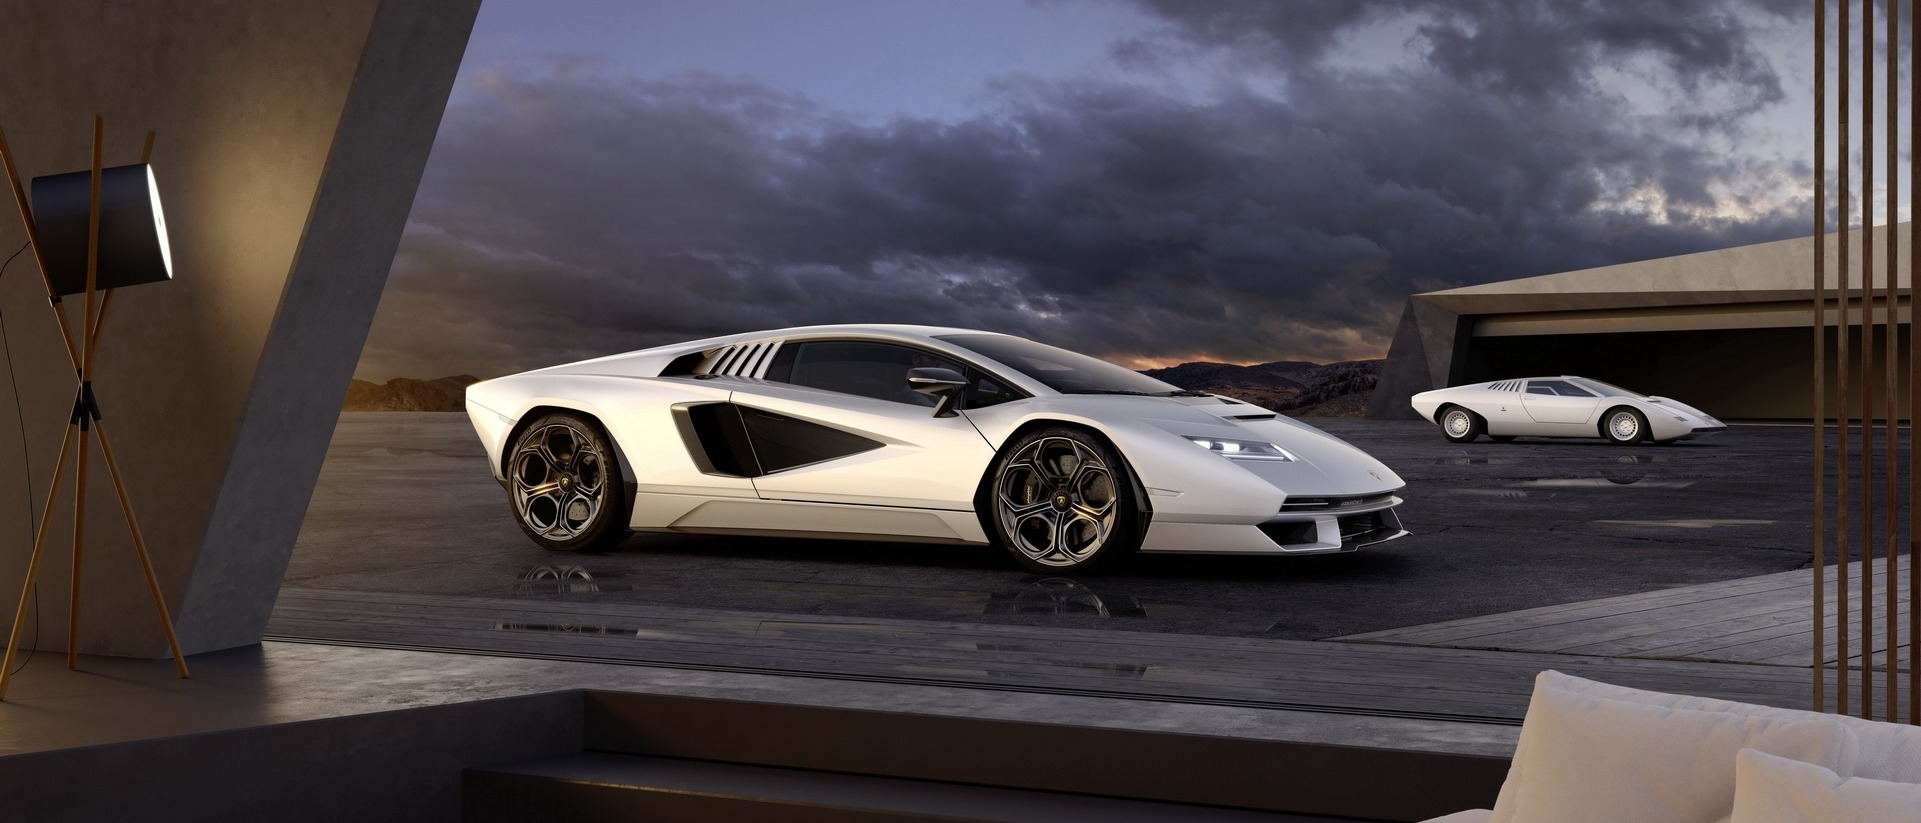 Lamborghini bắt tay PUBG Mobile, đưa dàn siêu xe vào trong game